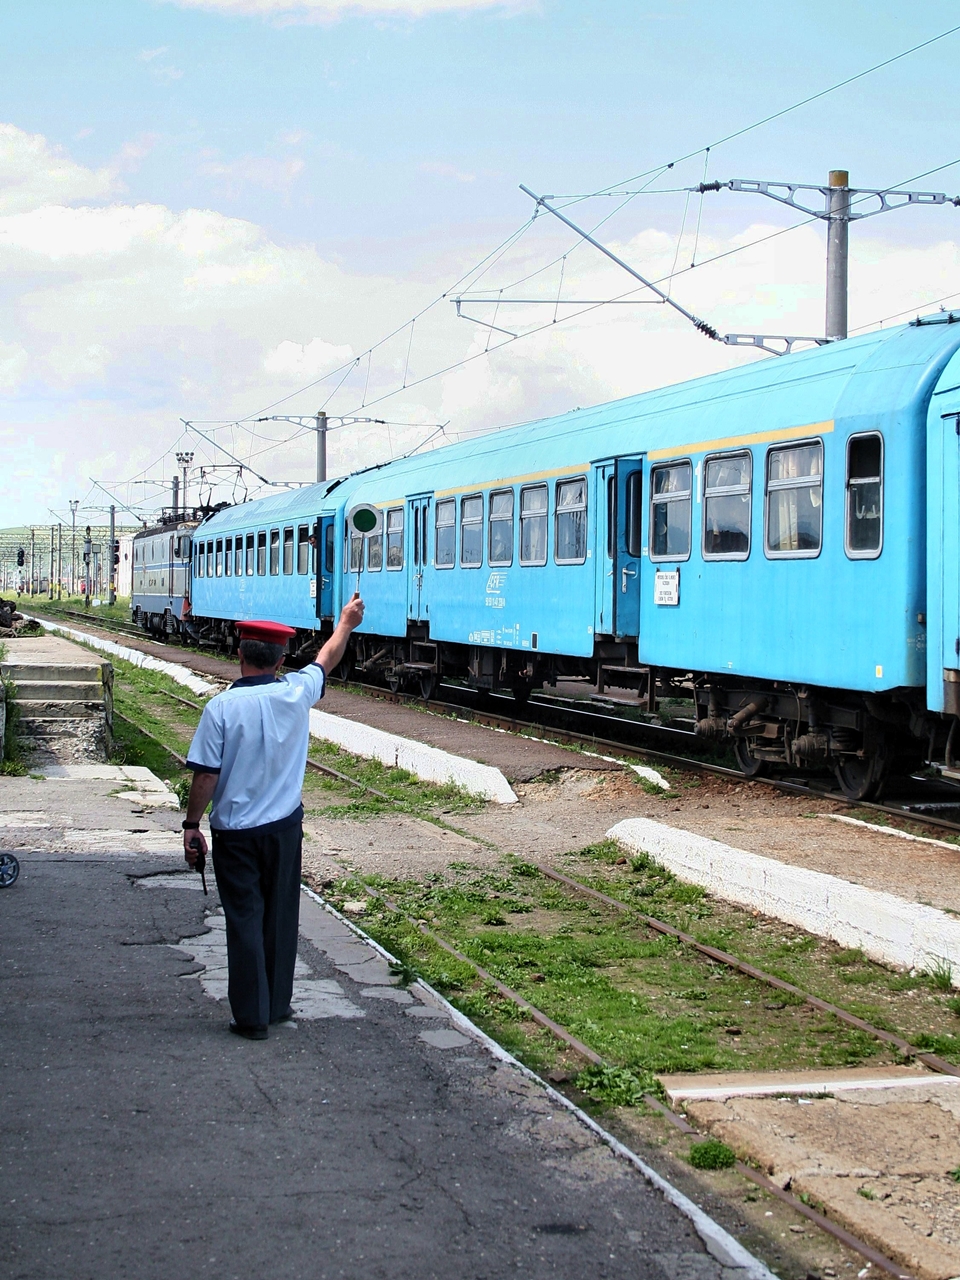 Február 28-án huszonöt vonatát utoljára meneszti el a CFR, hetvenkettő pedig csak hétköznap fog közlekedni (fotó: Incze Imre)